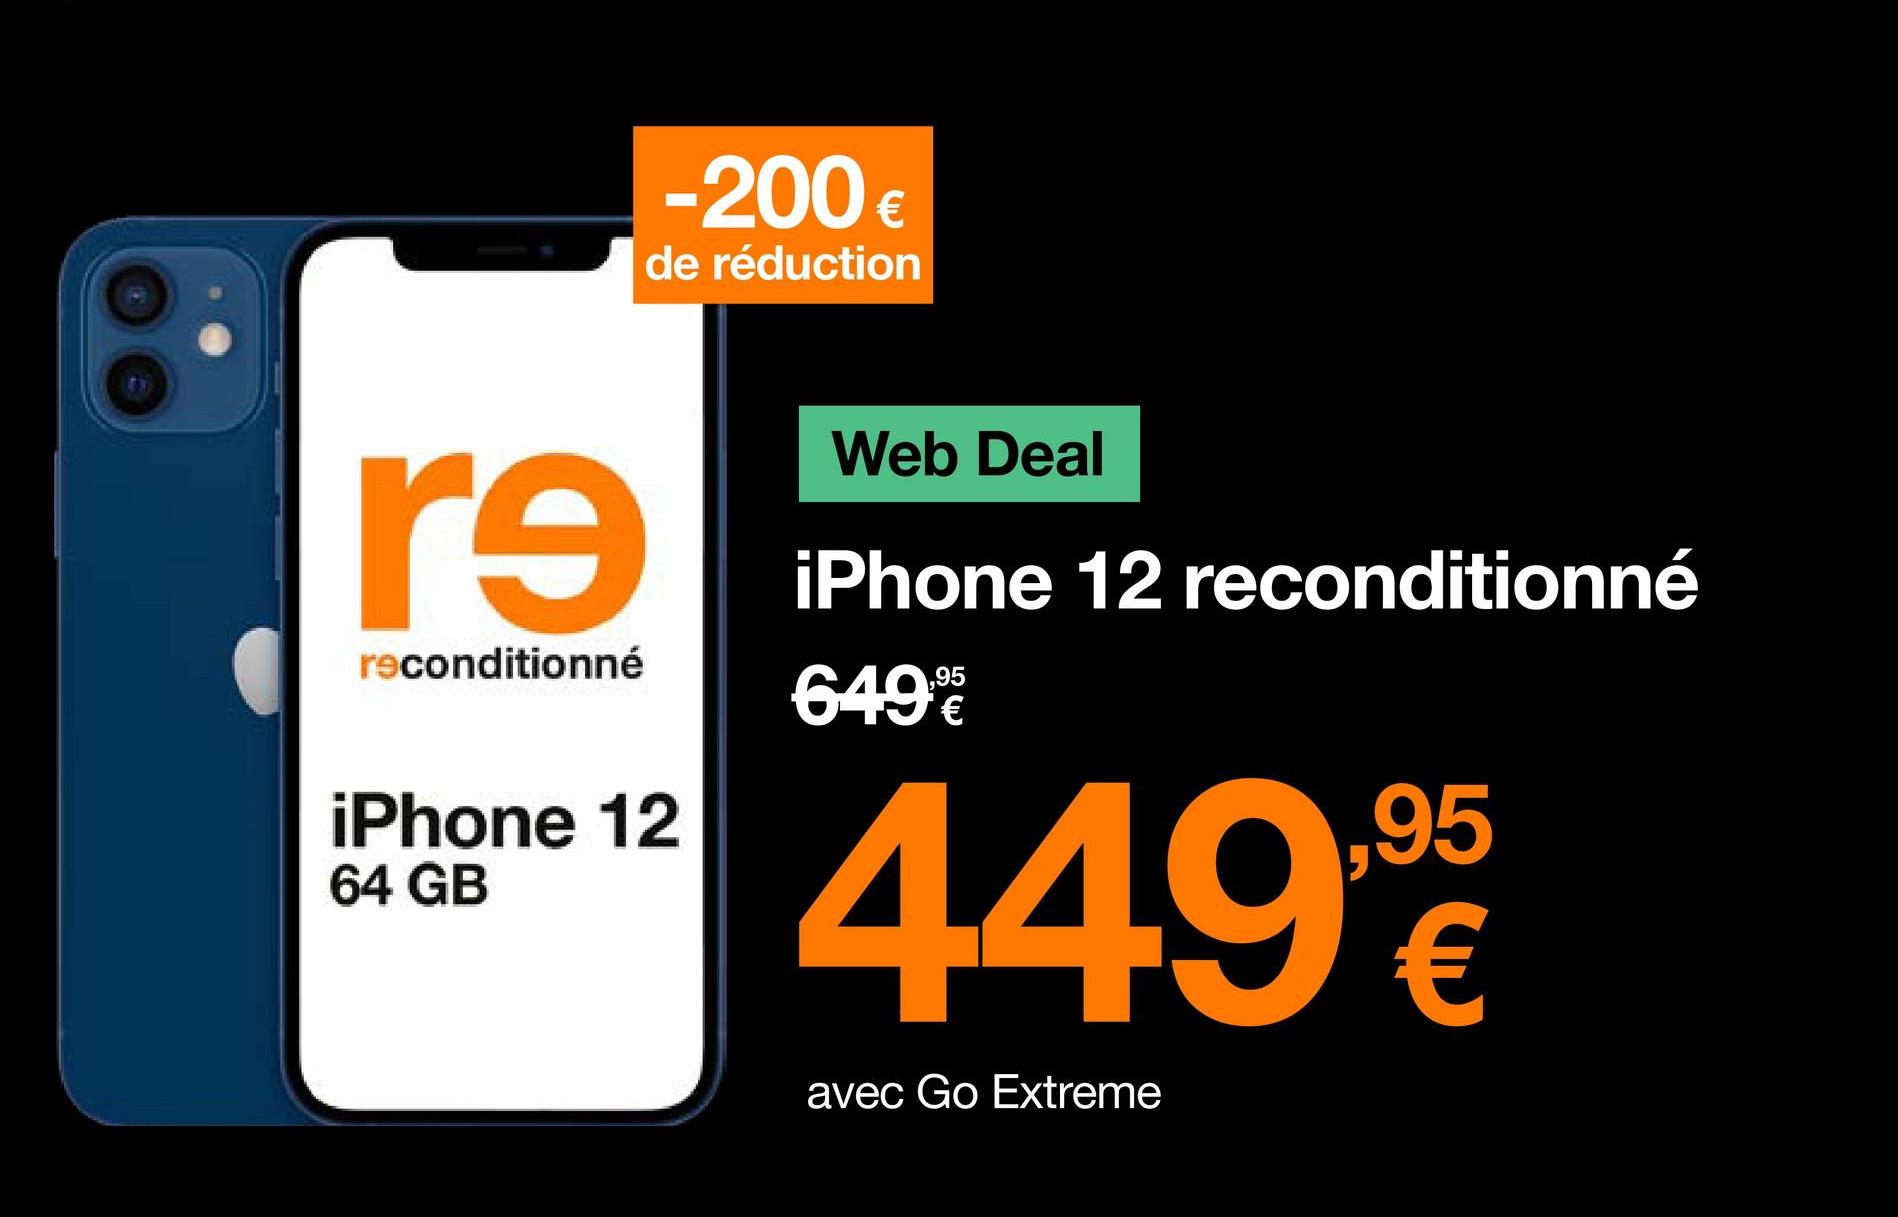 -200 €
de réduction
re
reconditionné
iPhone 12
64 GB
Web Deal
iPhone 12 reconditionné
649%
,95
449%
€
avec Go Extreme